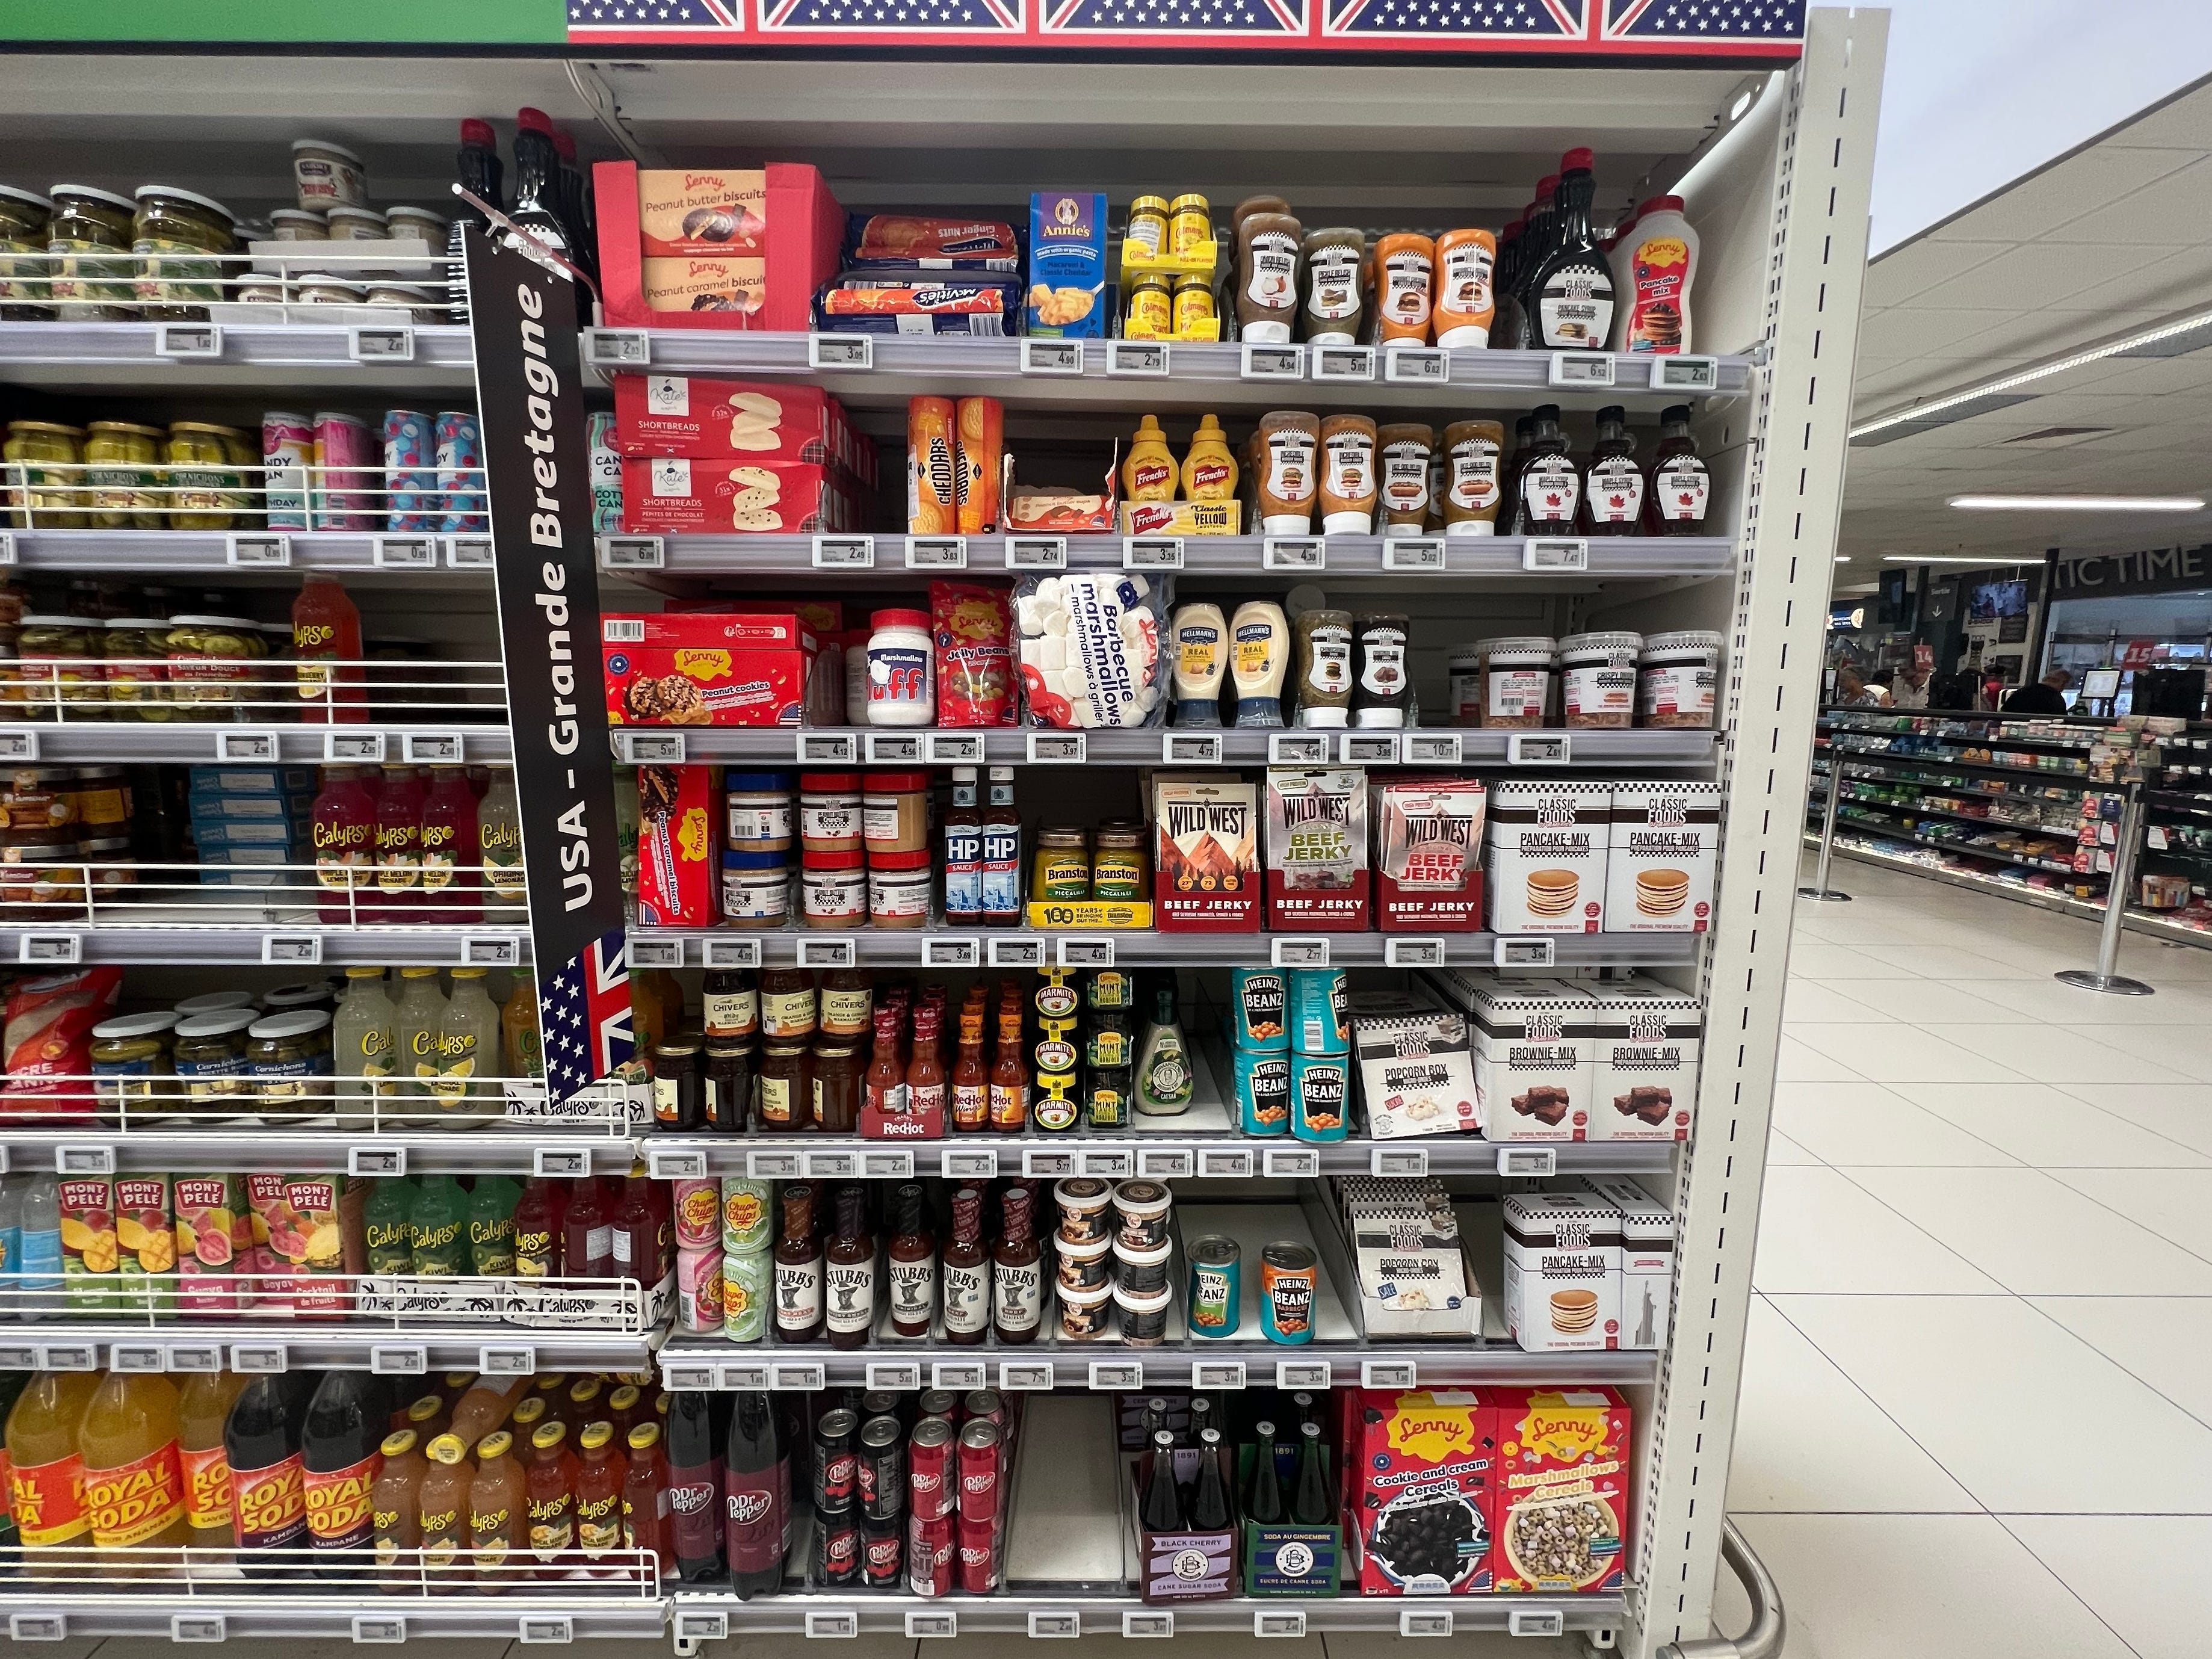 Internationales Sortiment mit amerikanisch inspirierten Produkten bei Auchan